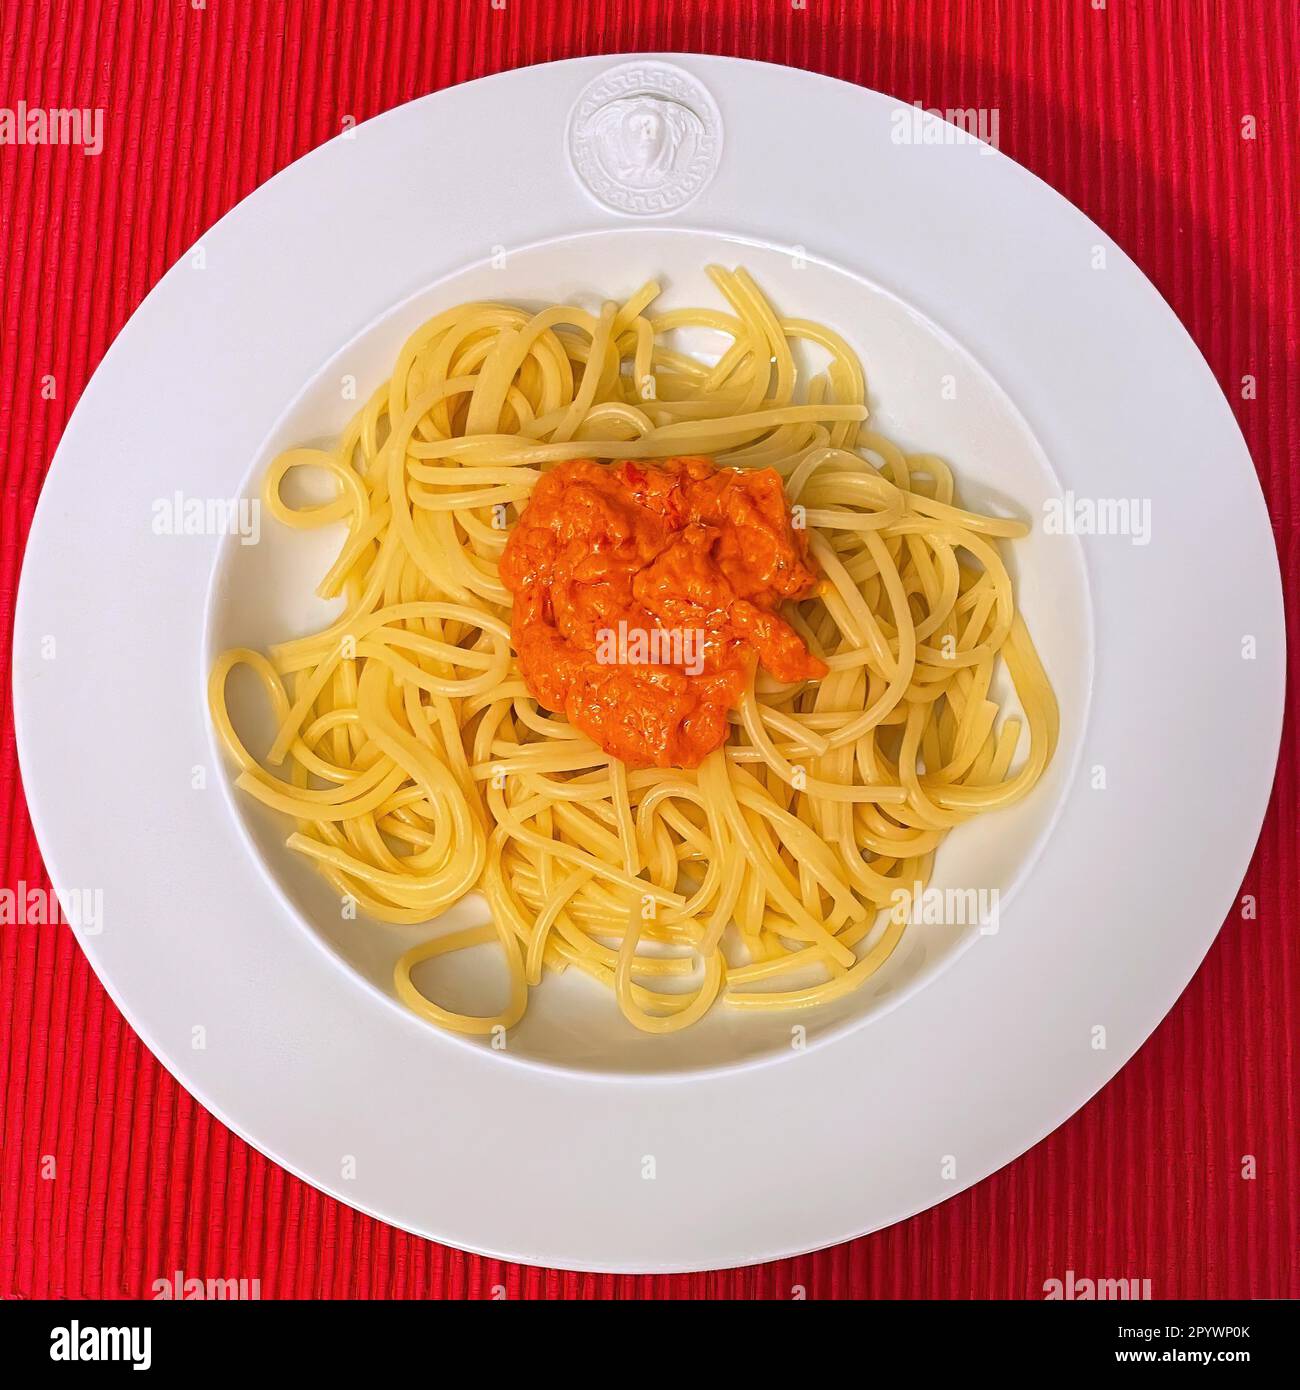 Italienisches Gericht serviert auf einem Teller Vorspeise Primo Piatto aus italienischer Küche Spaghetti mit rotem Pesto Pesto rosso, Italien Stockfoto